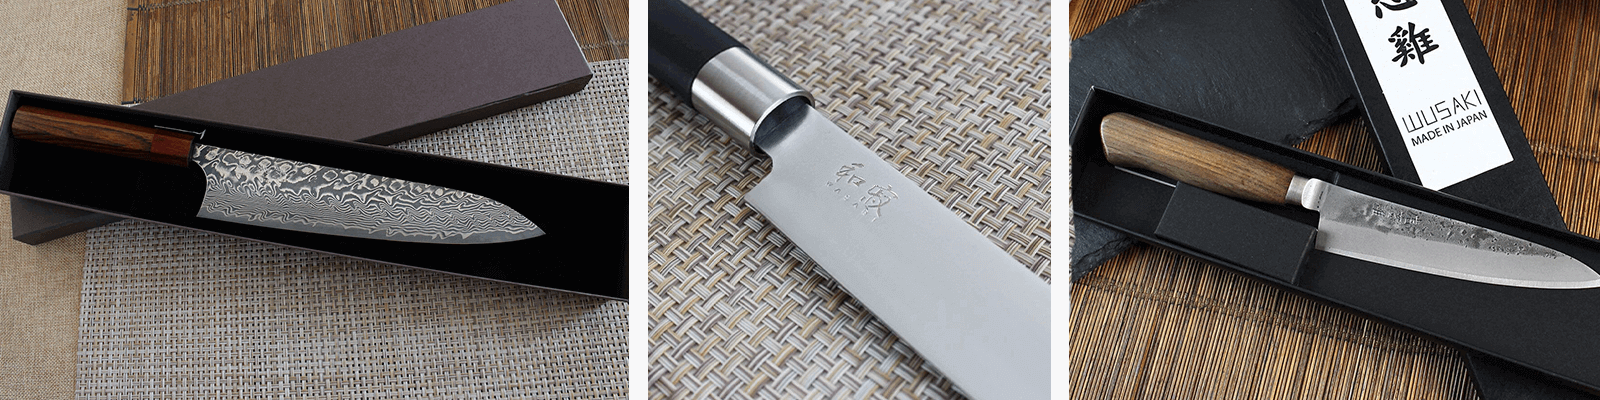 Comment prendre soin de son couteau japonais ?